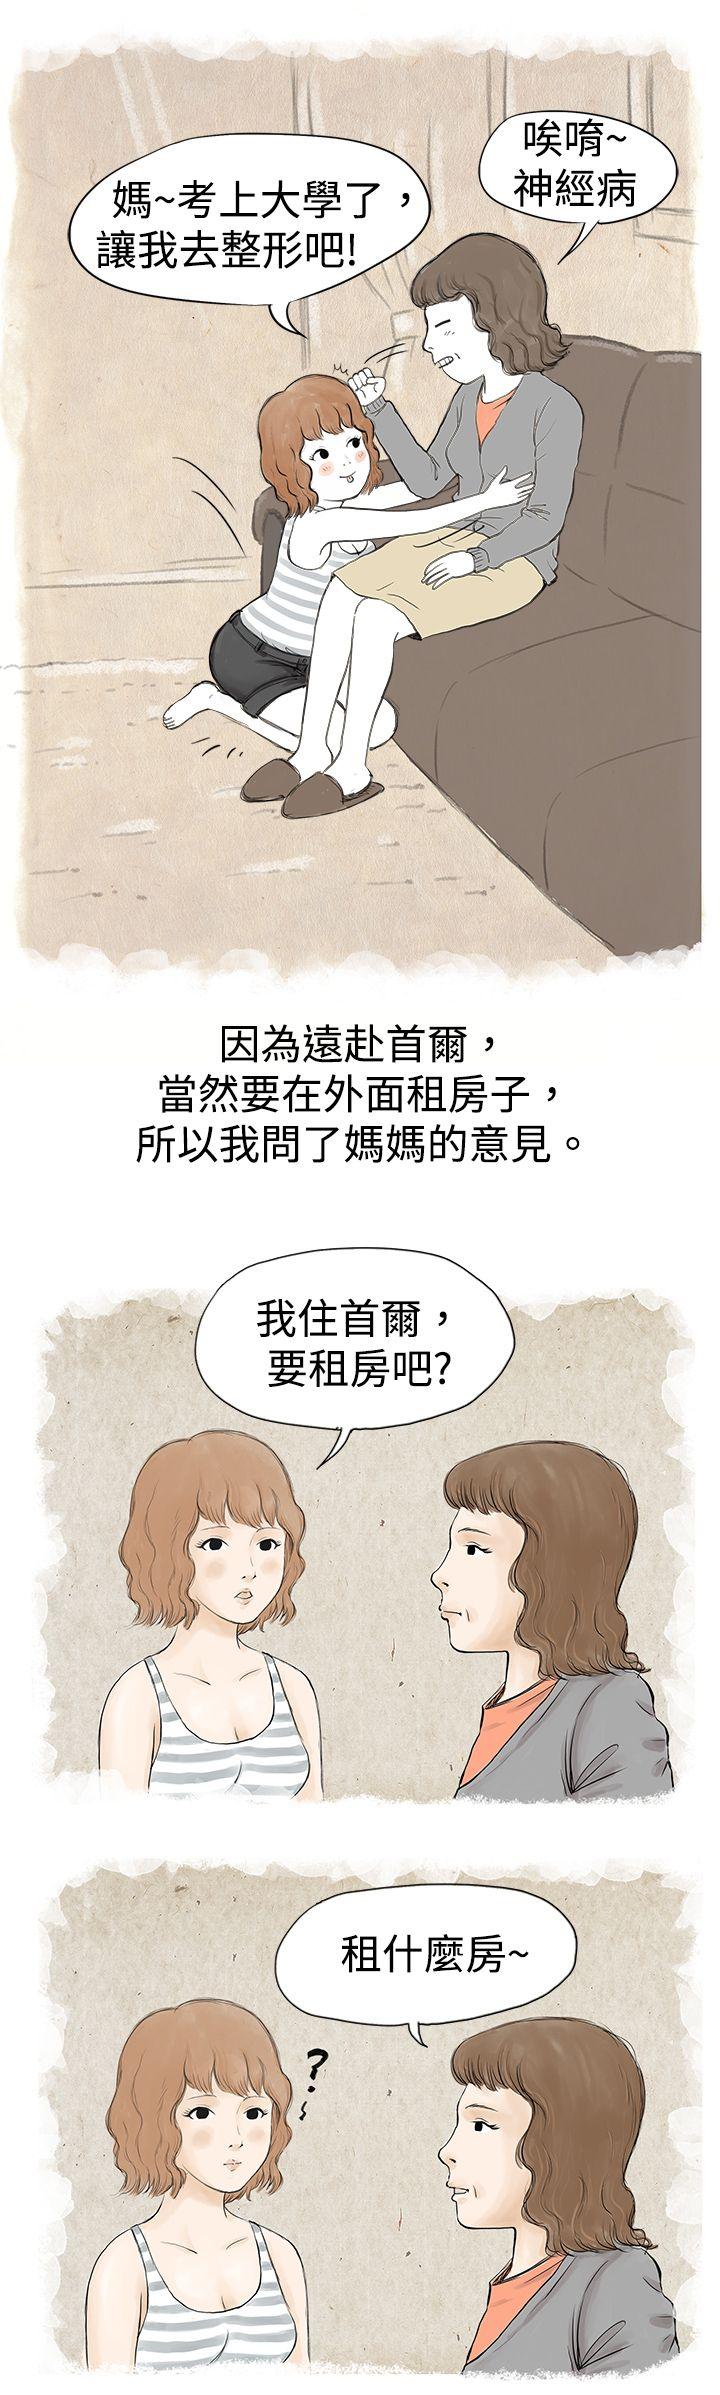 韩国污漫画 秘密Story 与哥哥的朋友在租屋...(上) 3